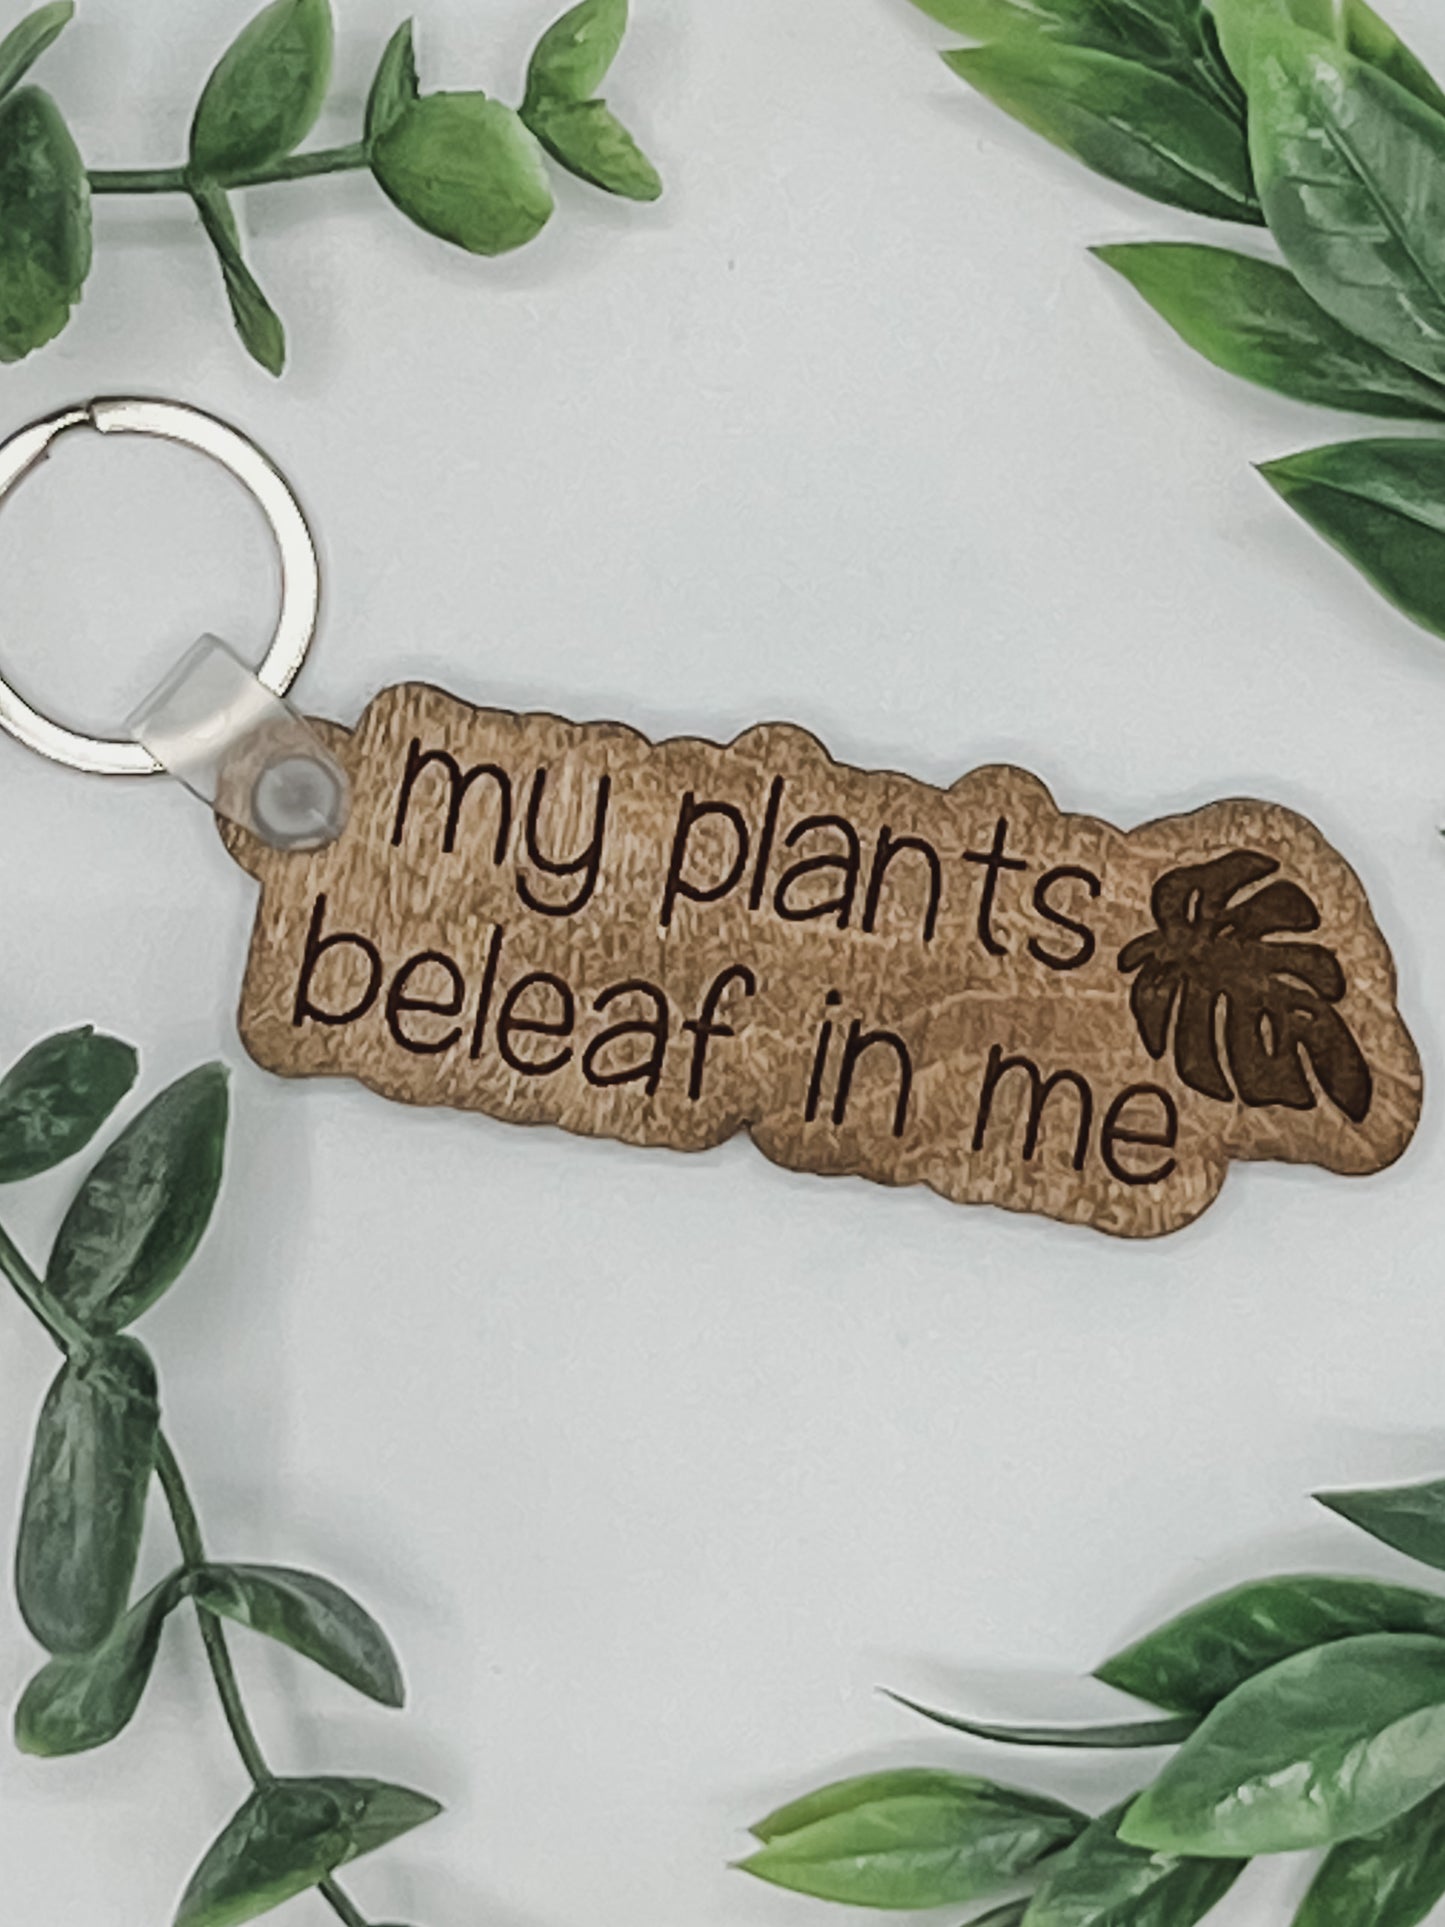 My plants beleaf in me